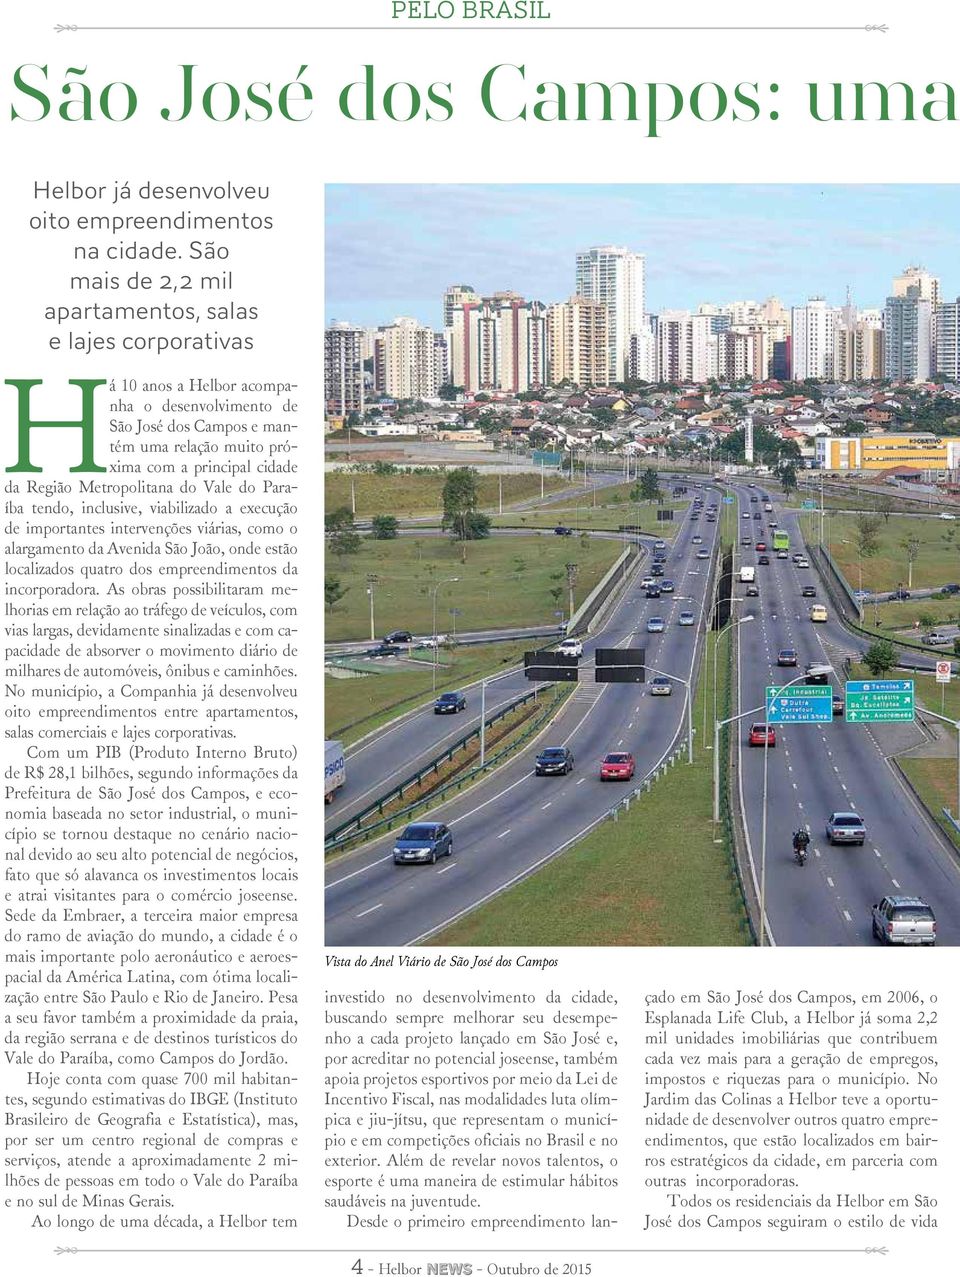 Metropolitana do Vale do Paraíba tendo, inclusive, viabilizado a execução de importantes intervenções viárias, como o alargamento da Avenida São João, onde estão localizados quatro dos